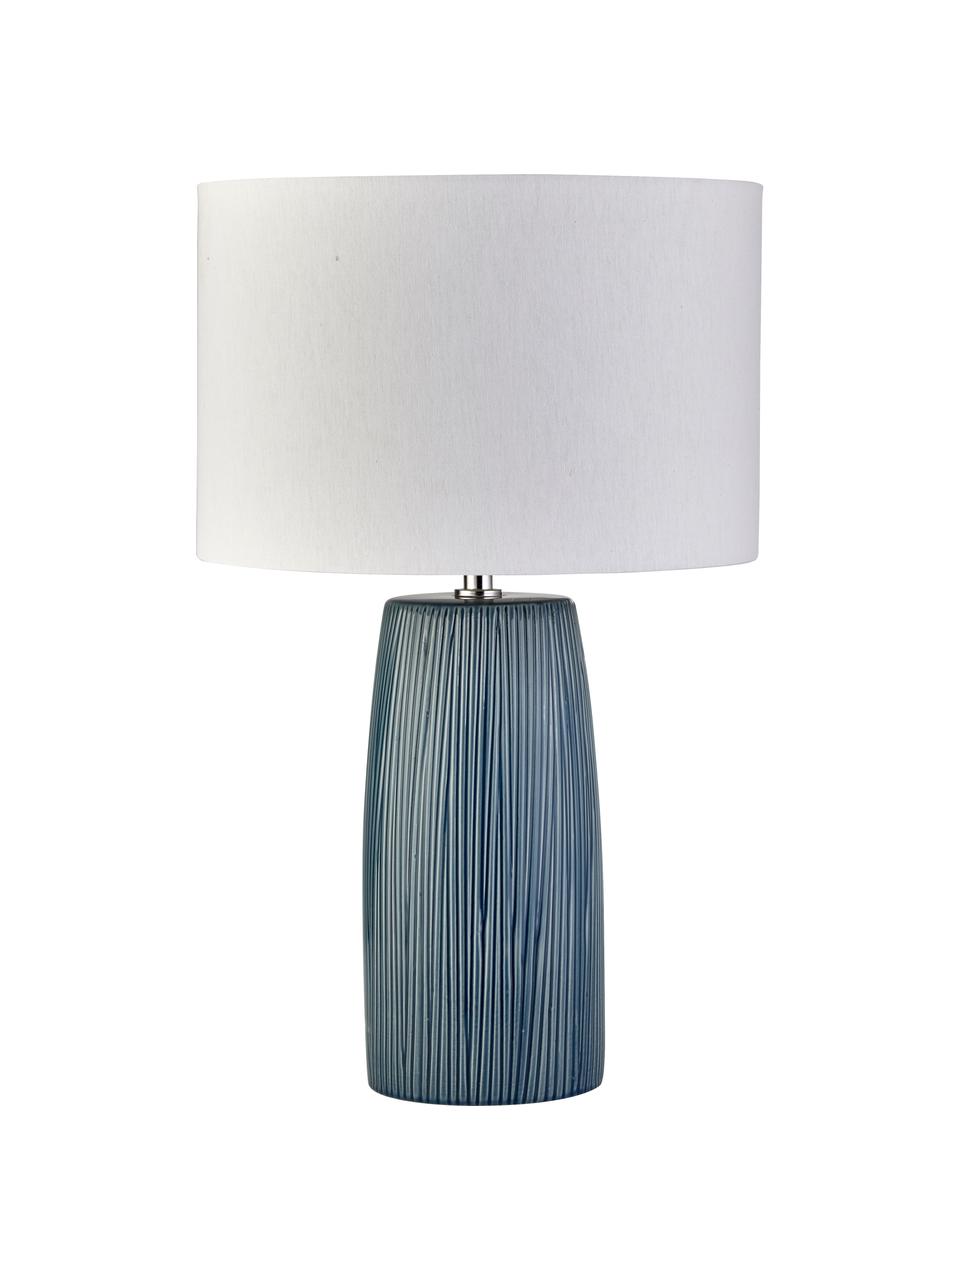 Tafellamp Bianca van keramiek, Lampvoet: keramiek, Lampenkap: textiel, Decoratie: metaal, Wit, blauw, Ø 30 x H 49 cm